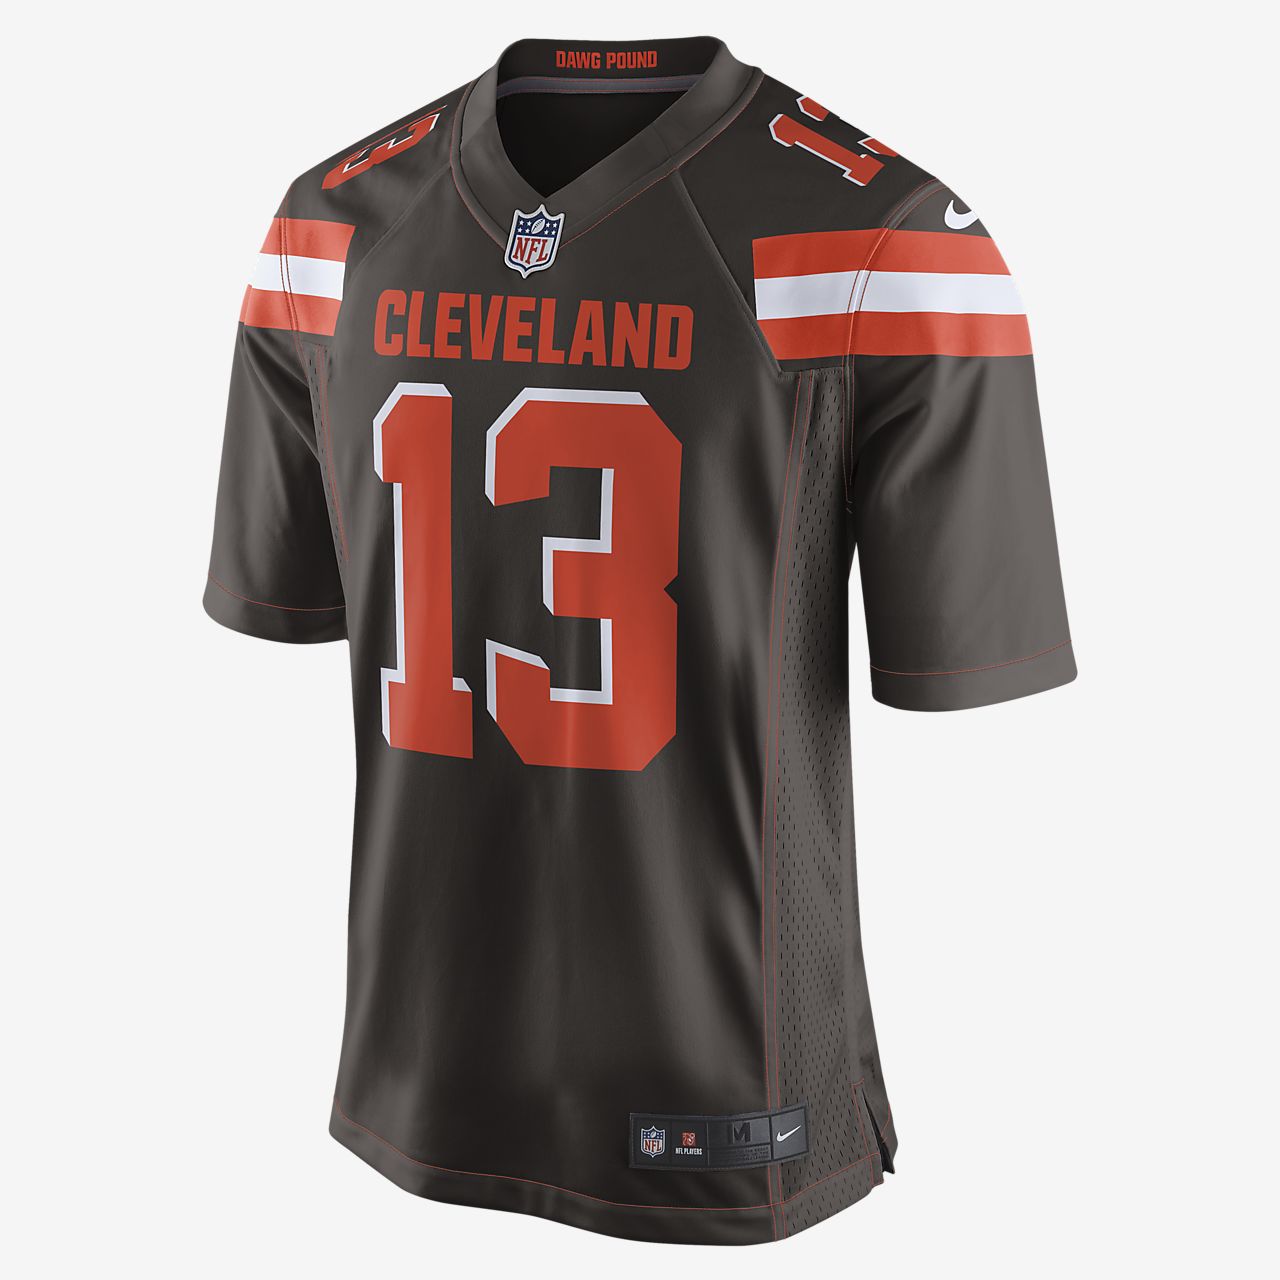 NFL Cleveland Browns (Odell Beckham Jr.) Camiseta de fútbol 